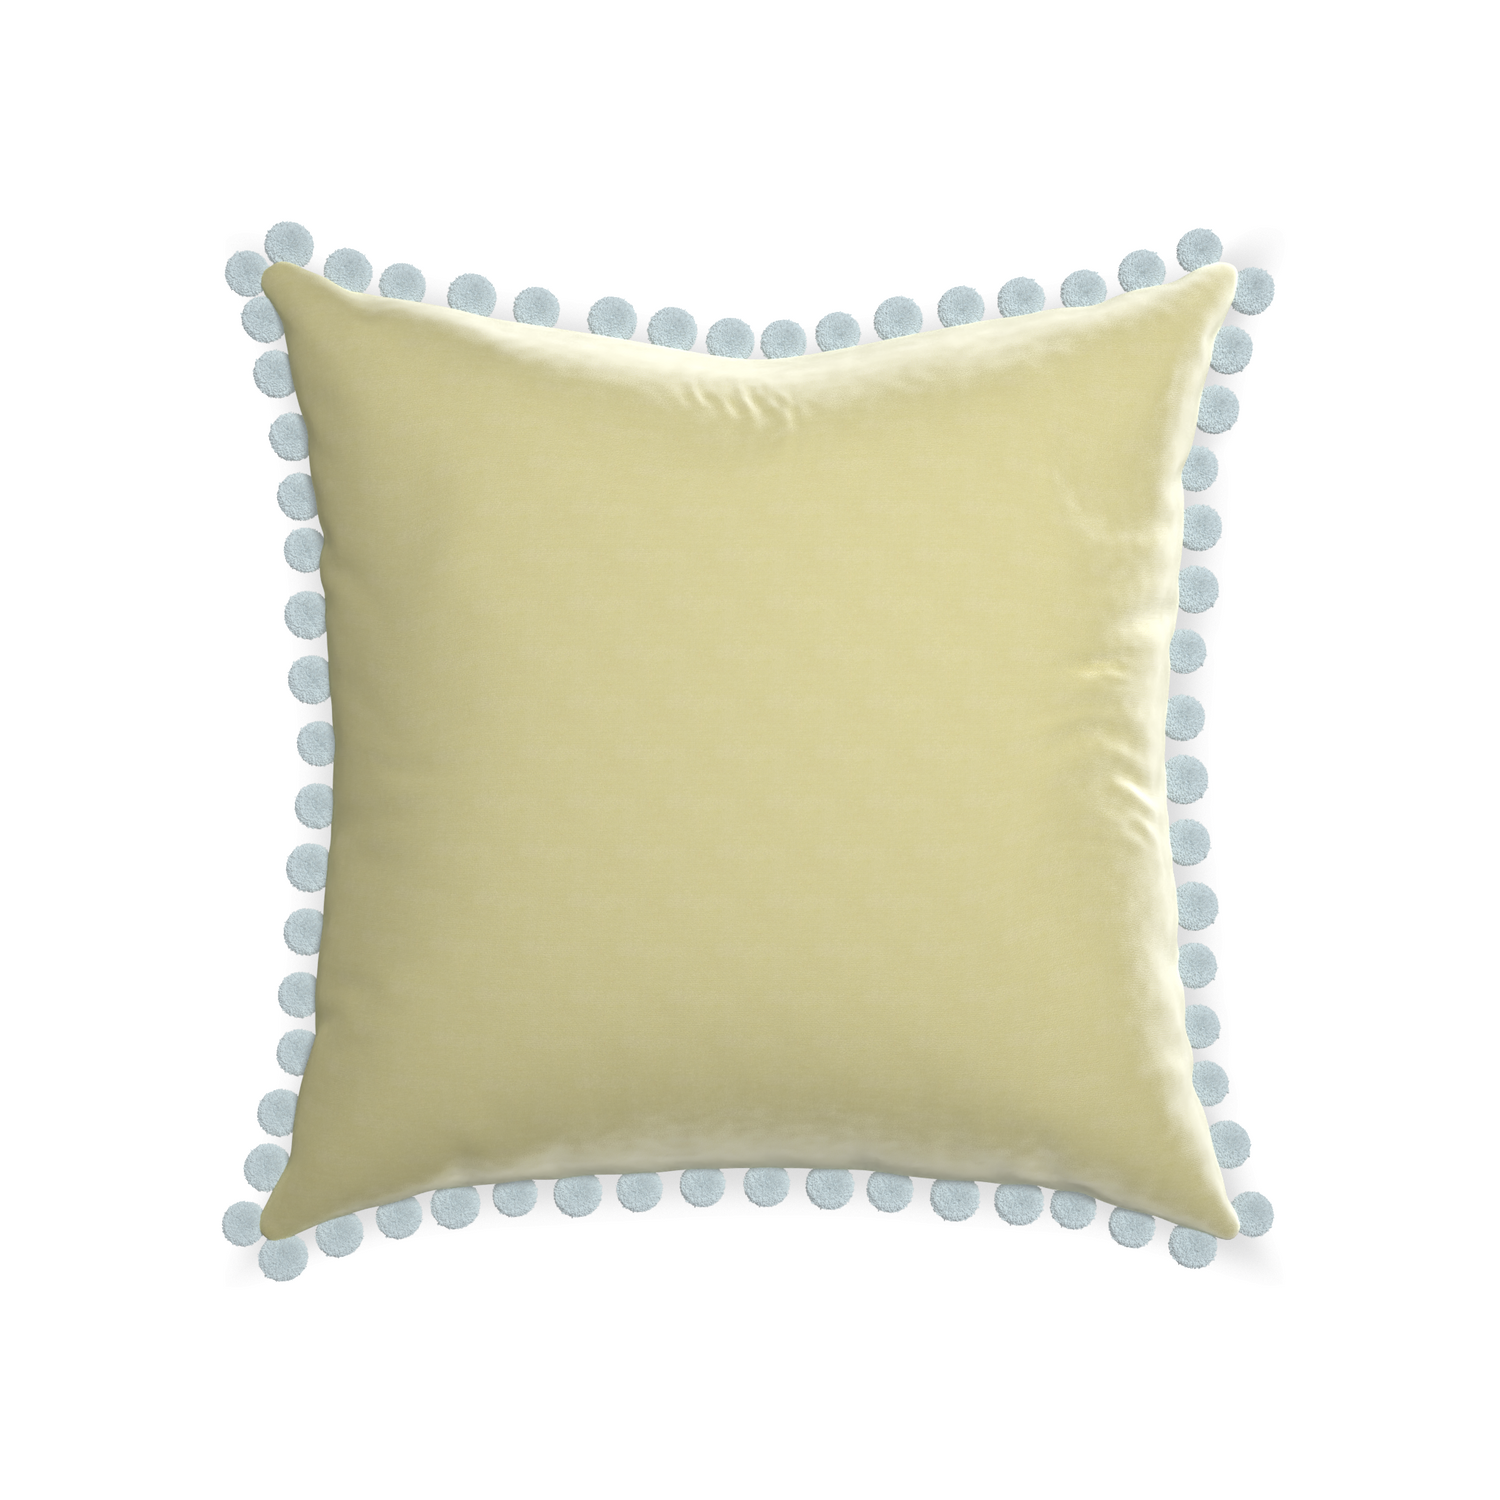 22-square pear velvet custom pillow with powder pom pom on white background